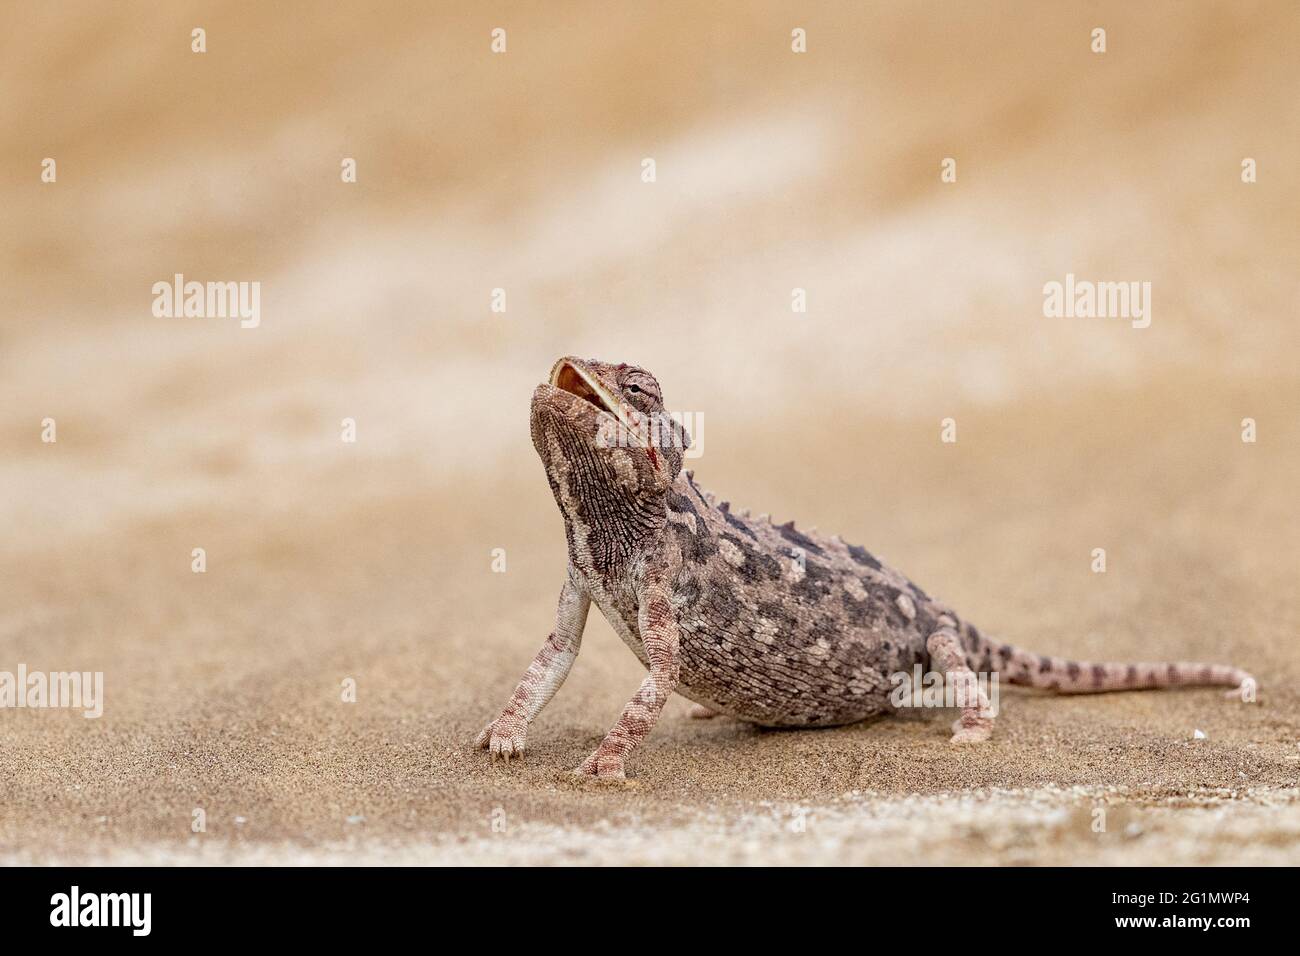 Namibia, Swakopmund, Dorob National Park, Namaqua chameleon (Chamaeleo namaquensis) Stock Photo